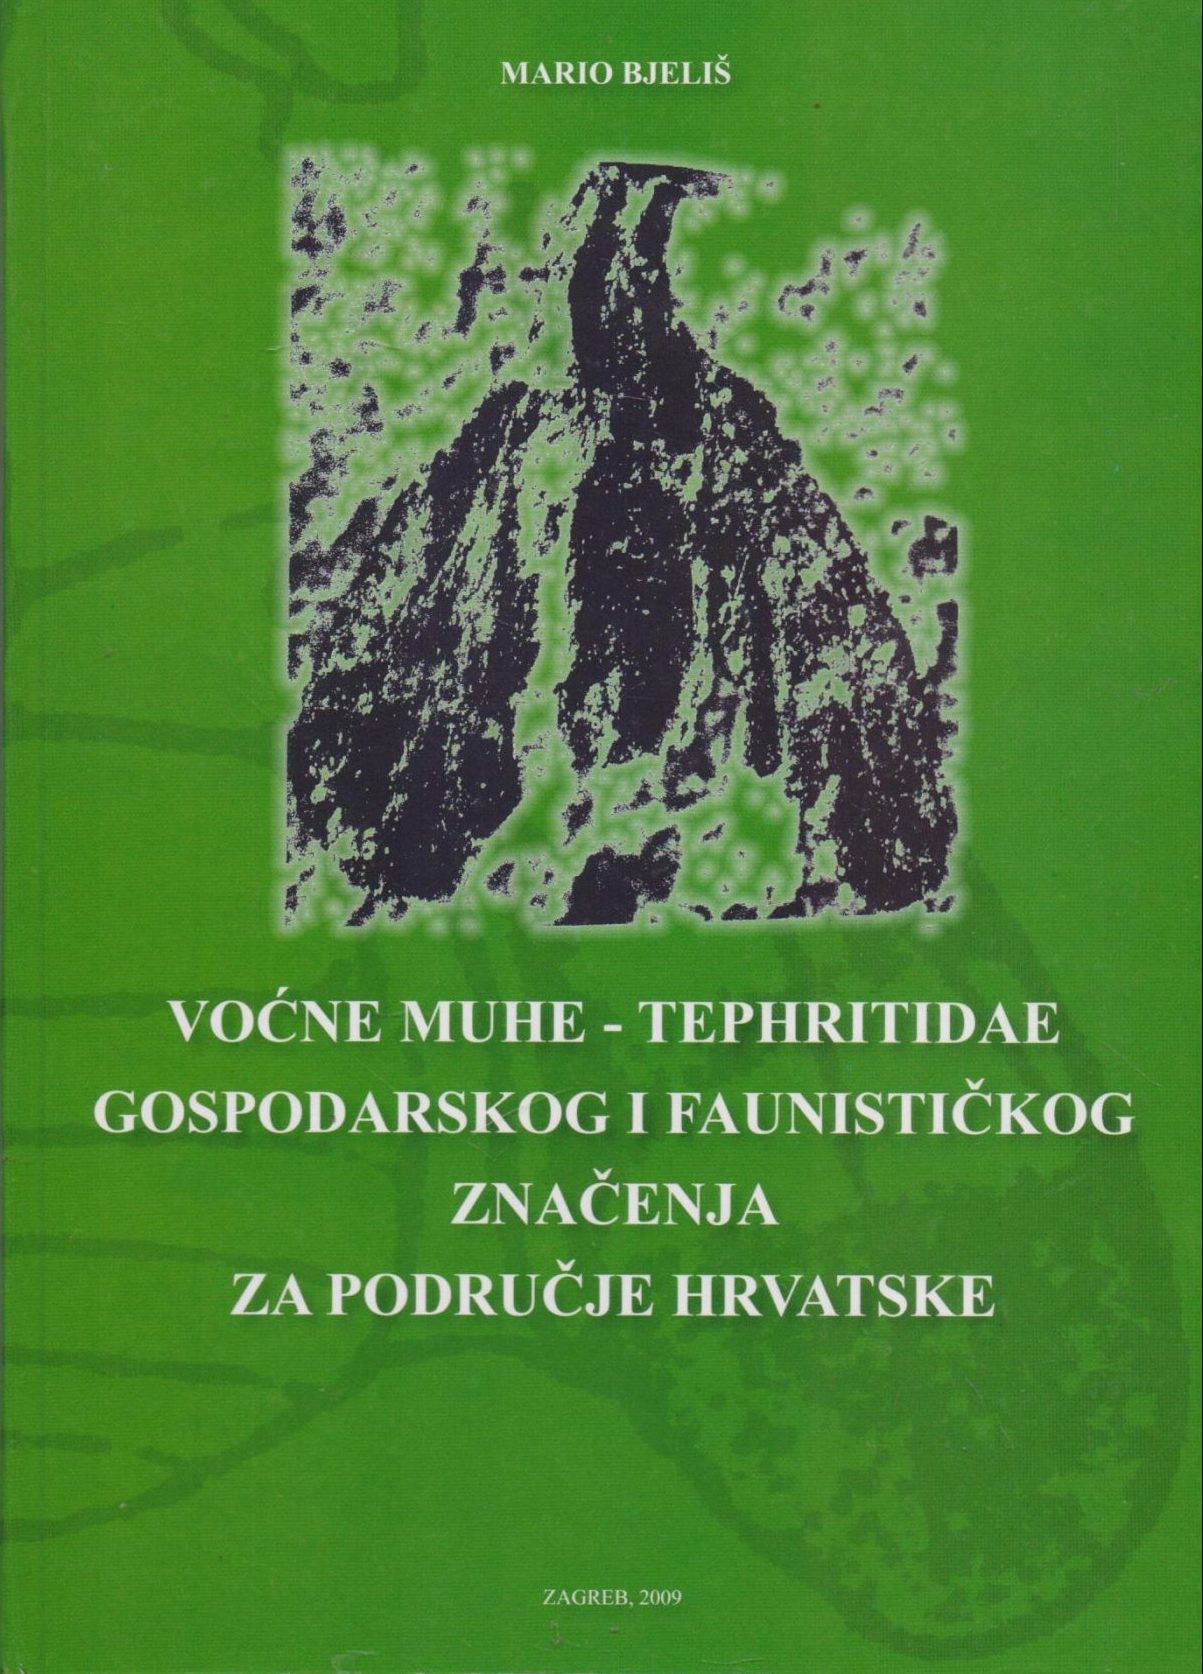 Voćne muhe-tephritidae gospodarskog i faunističkog značenja za područje hrvatske Mario Bjeliš